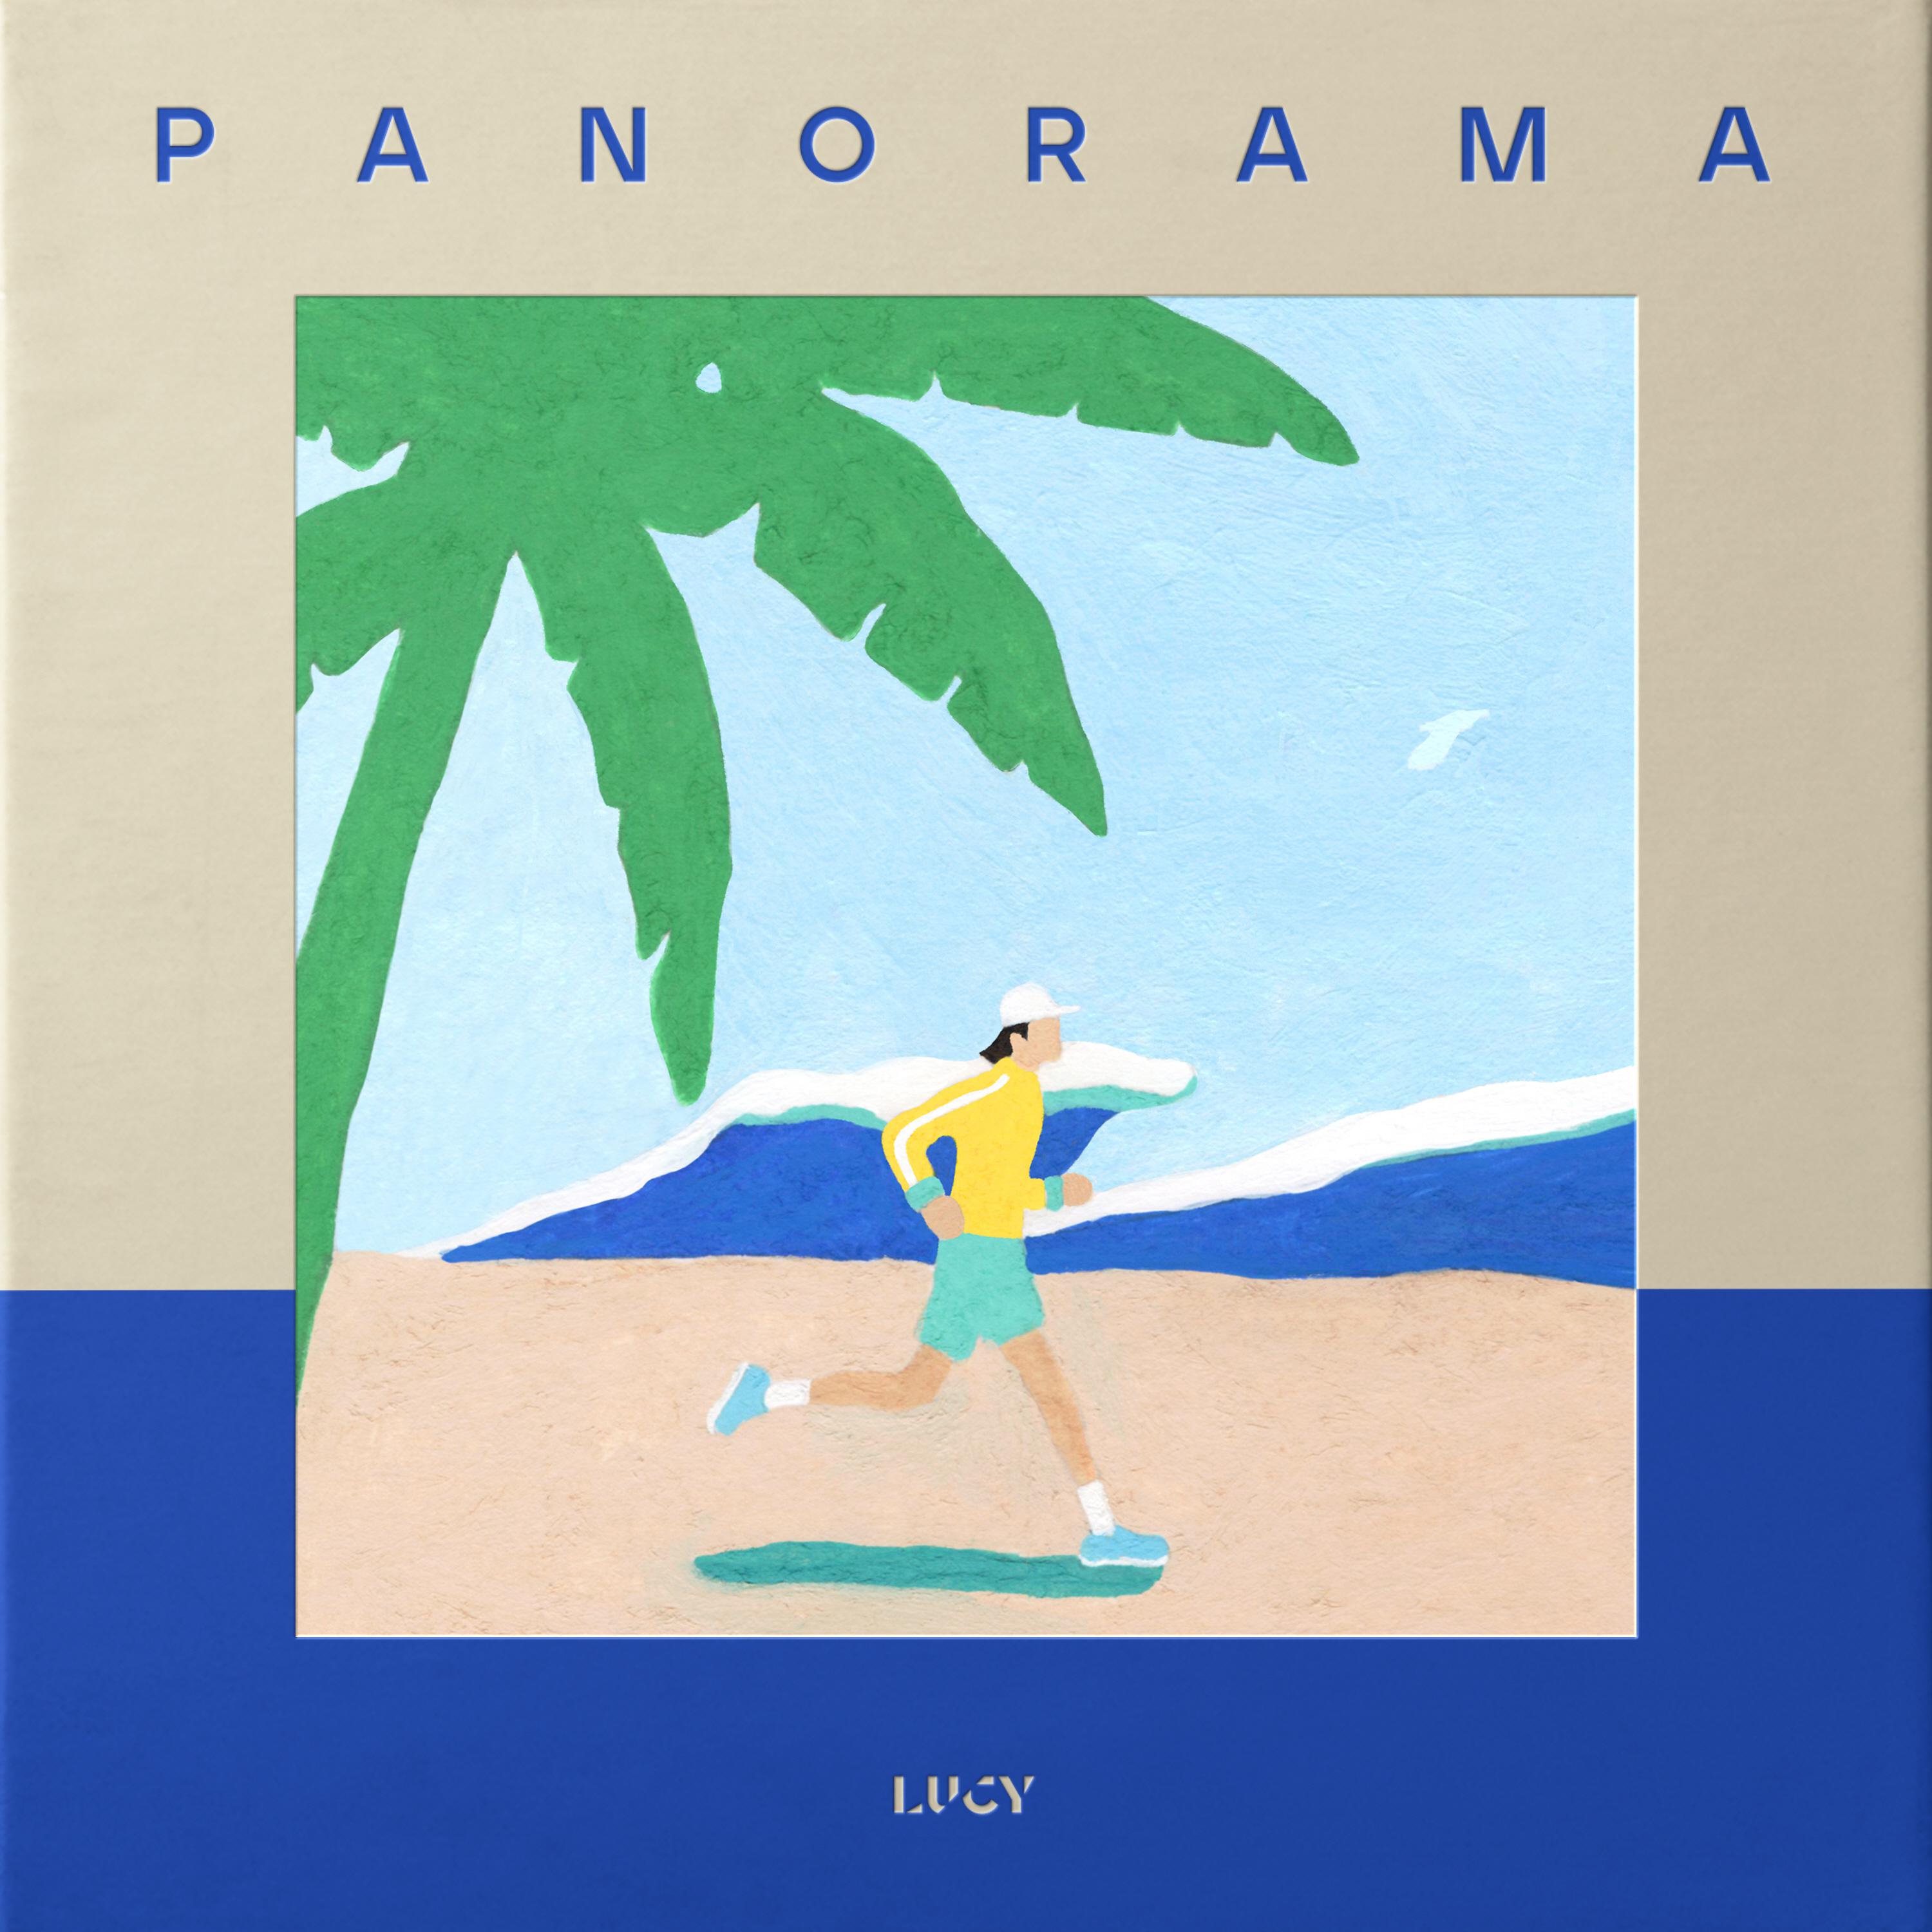 Flare歌词 歌手LUCY-专辑PANORAMA-单曲《Flare》LRC歌词下载